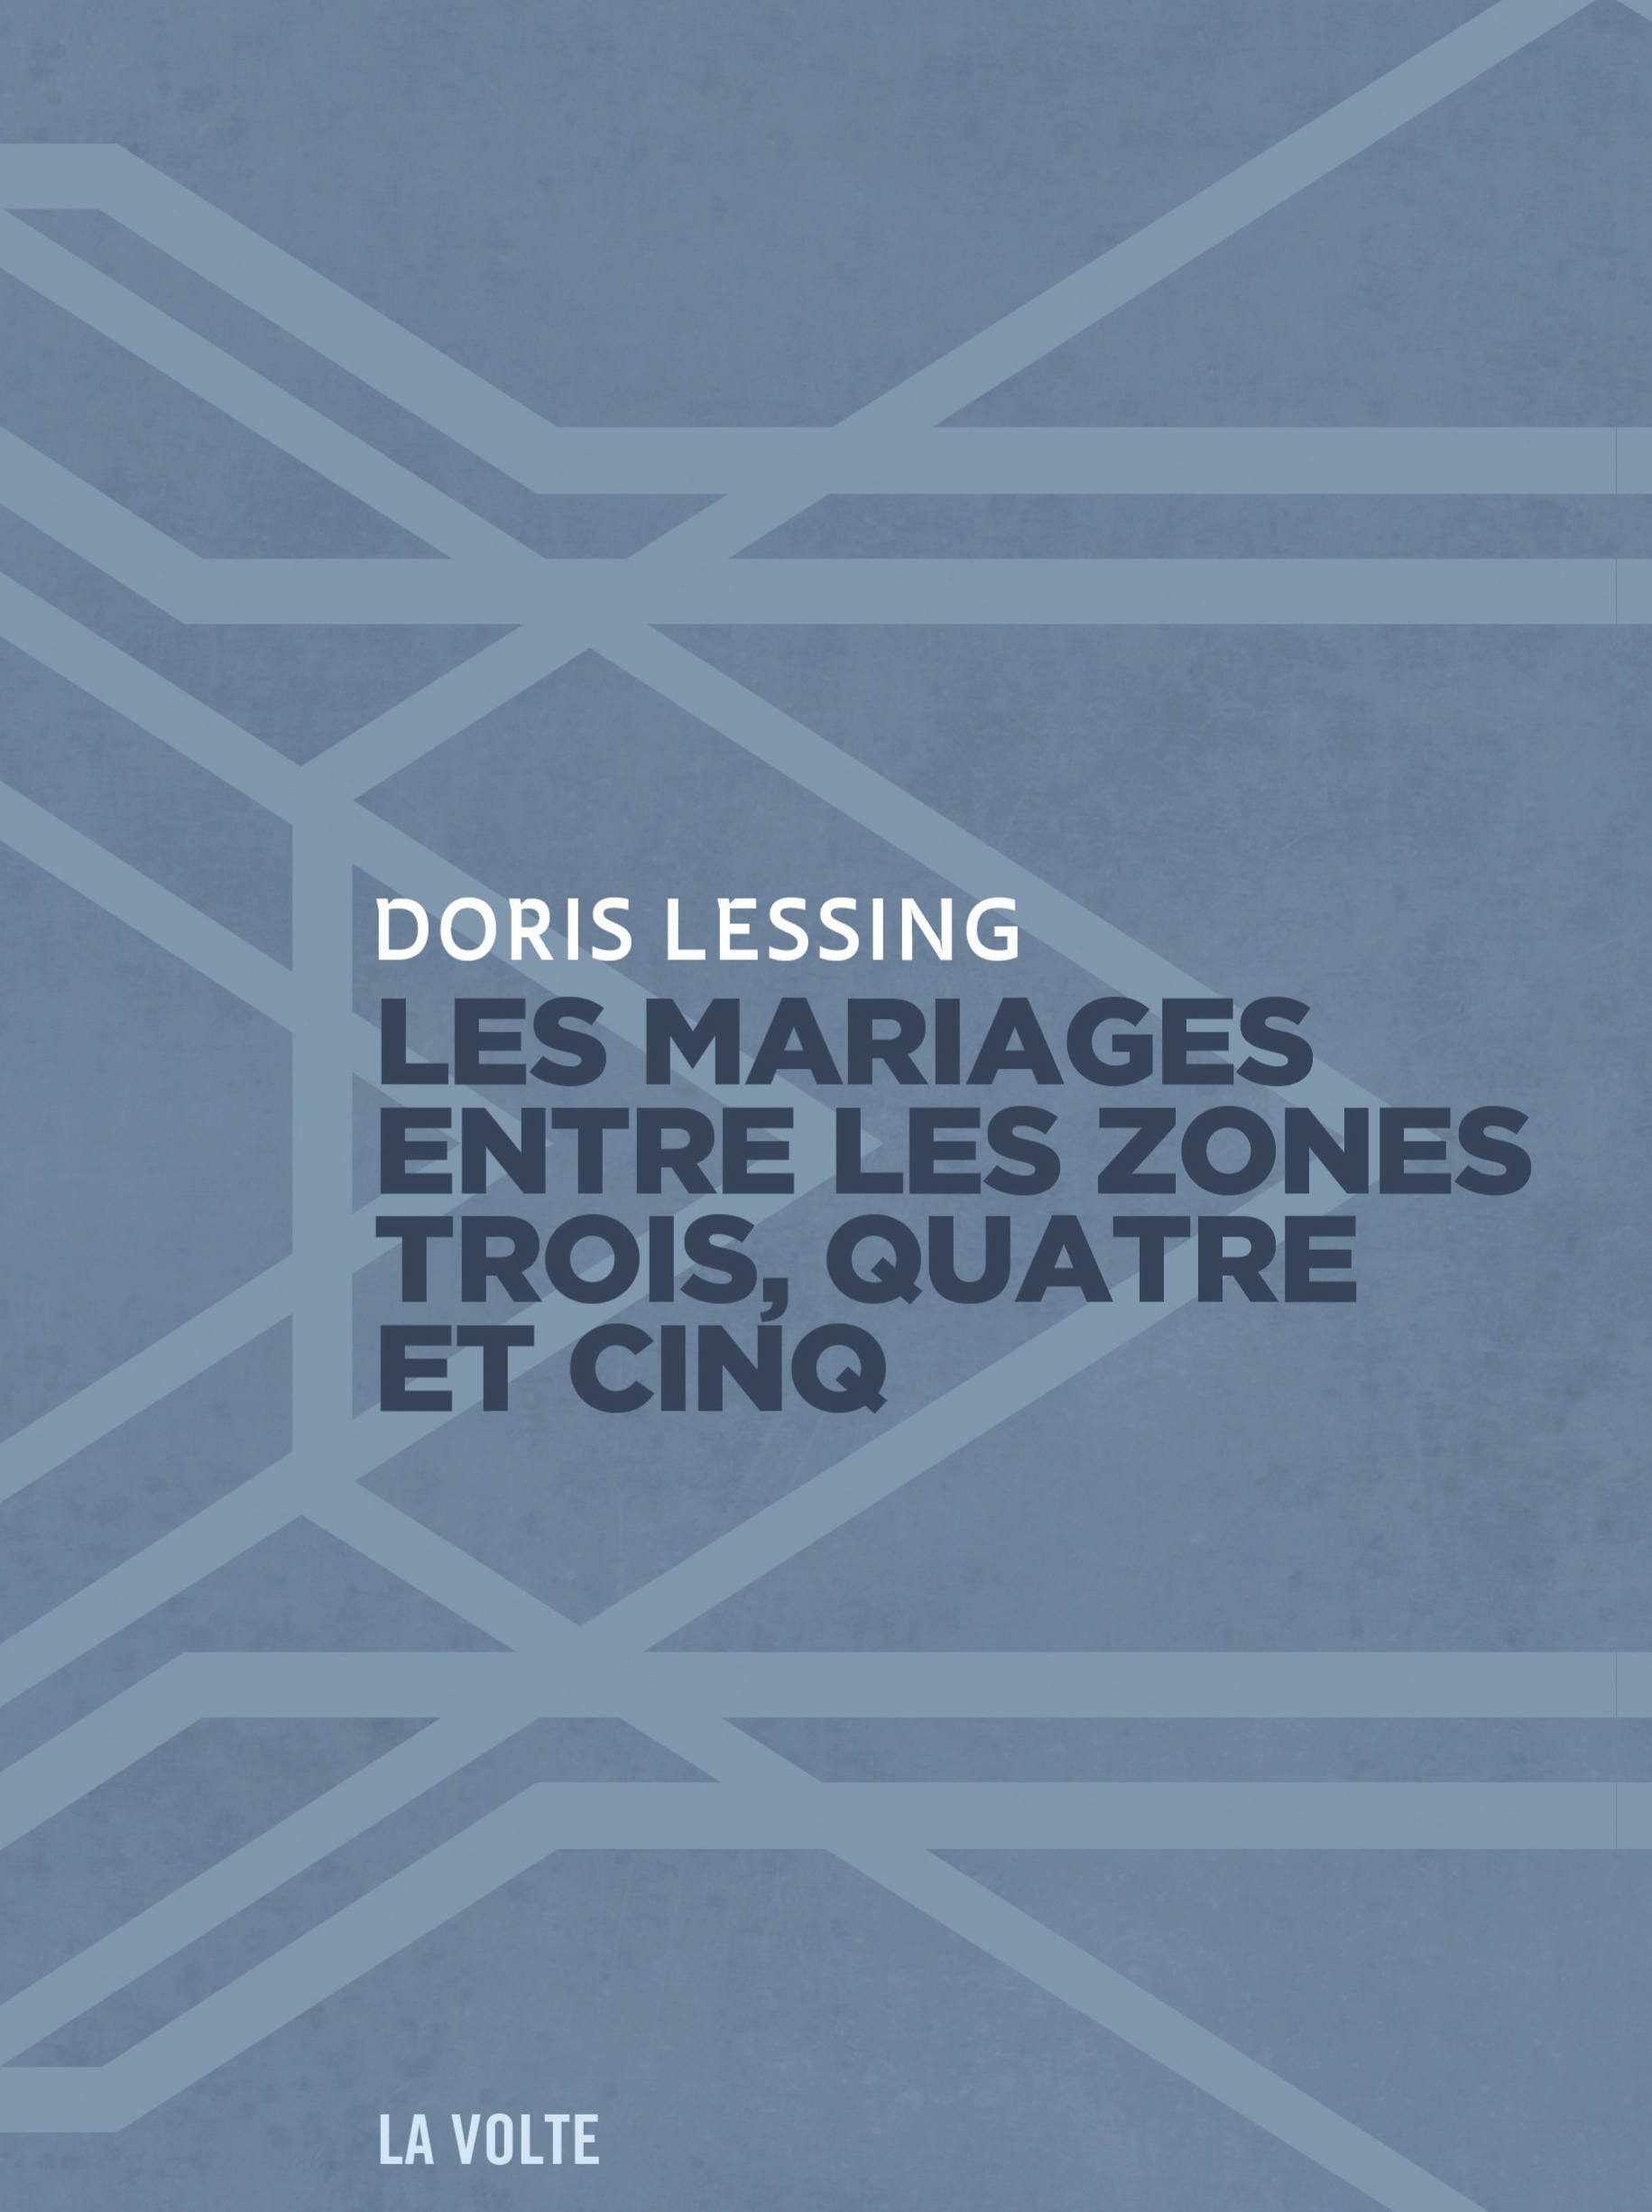 Les mariages entre les zones... Doris Lessing